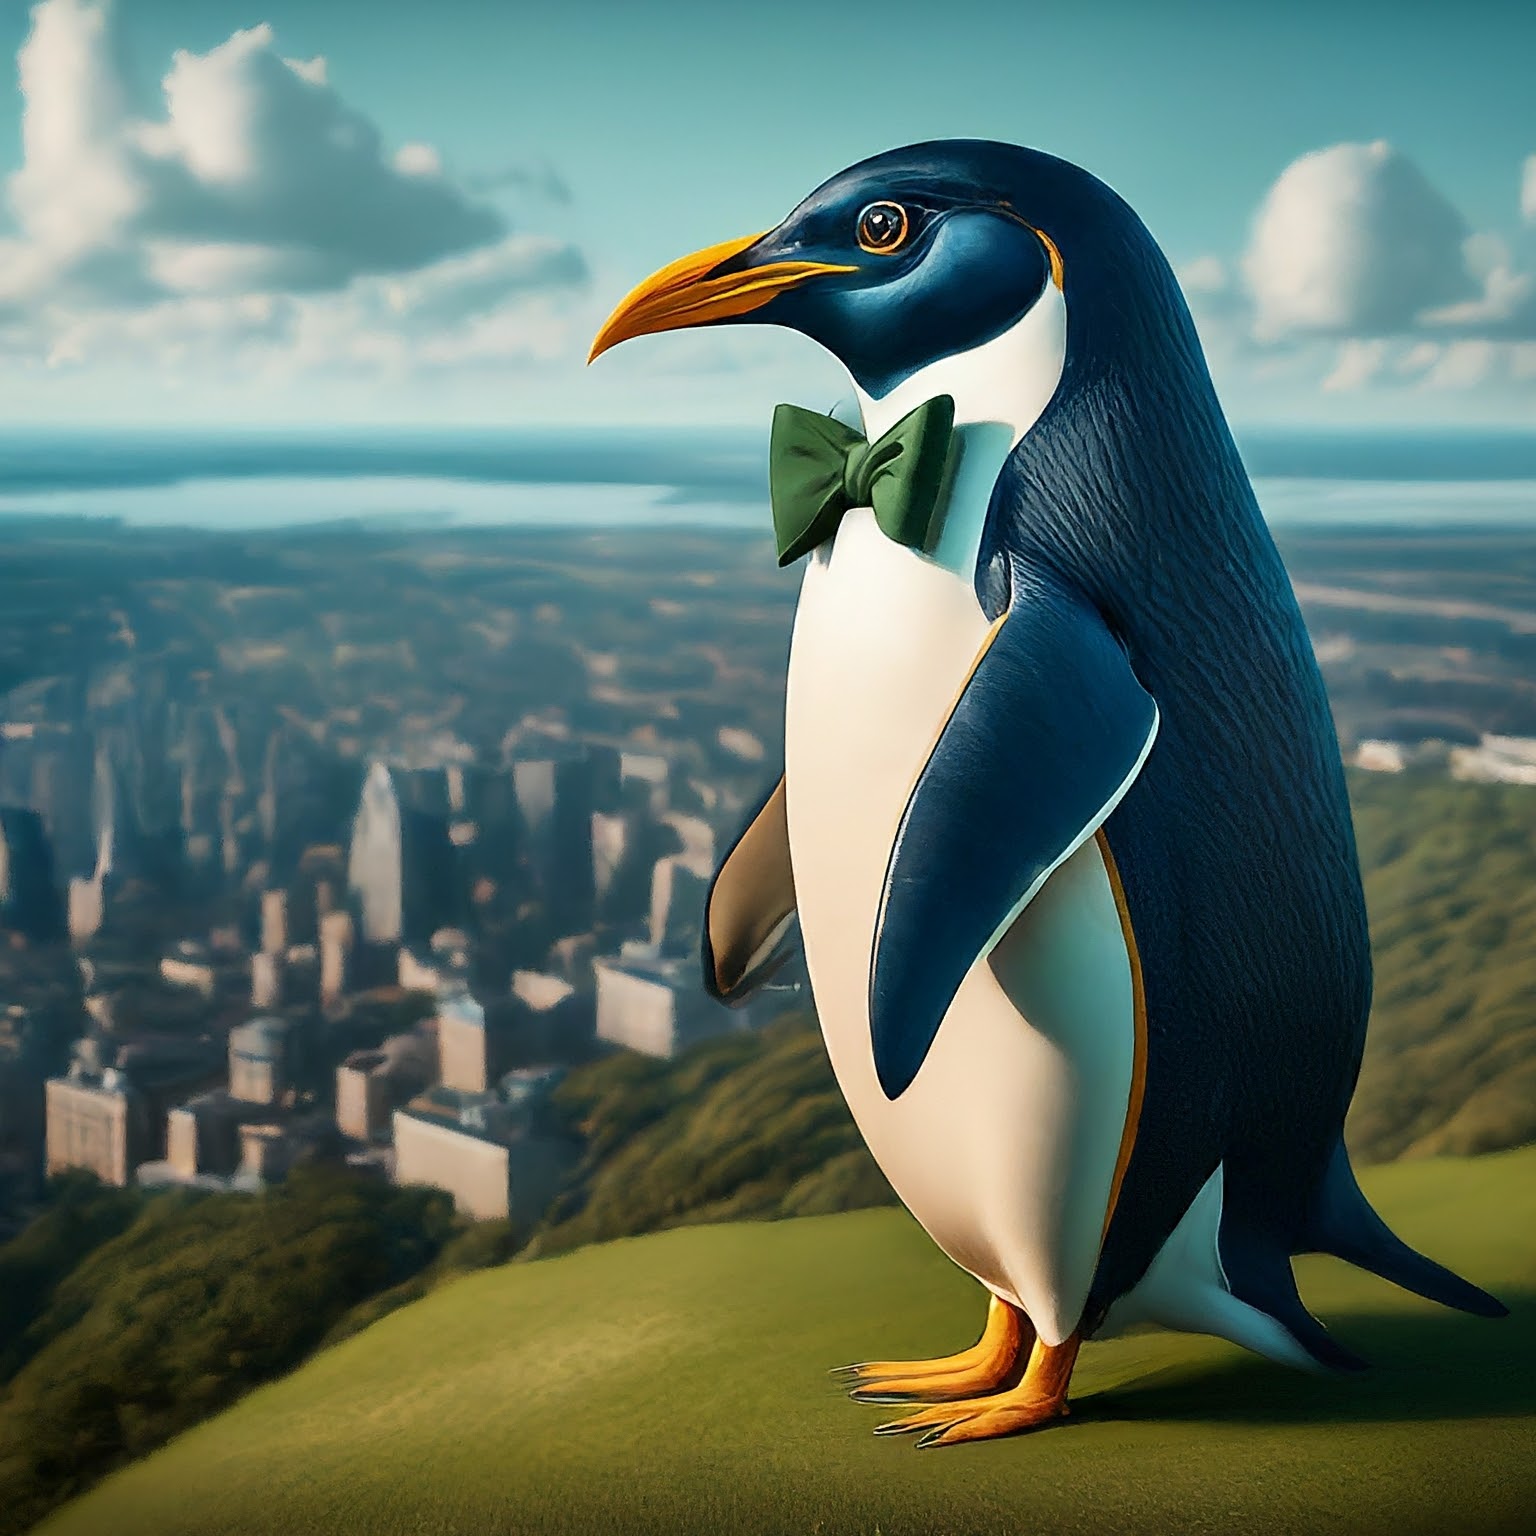 penguin-overlooking-city-in-green-bow-tie